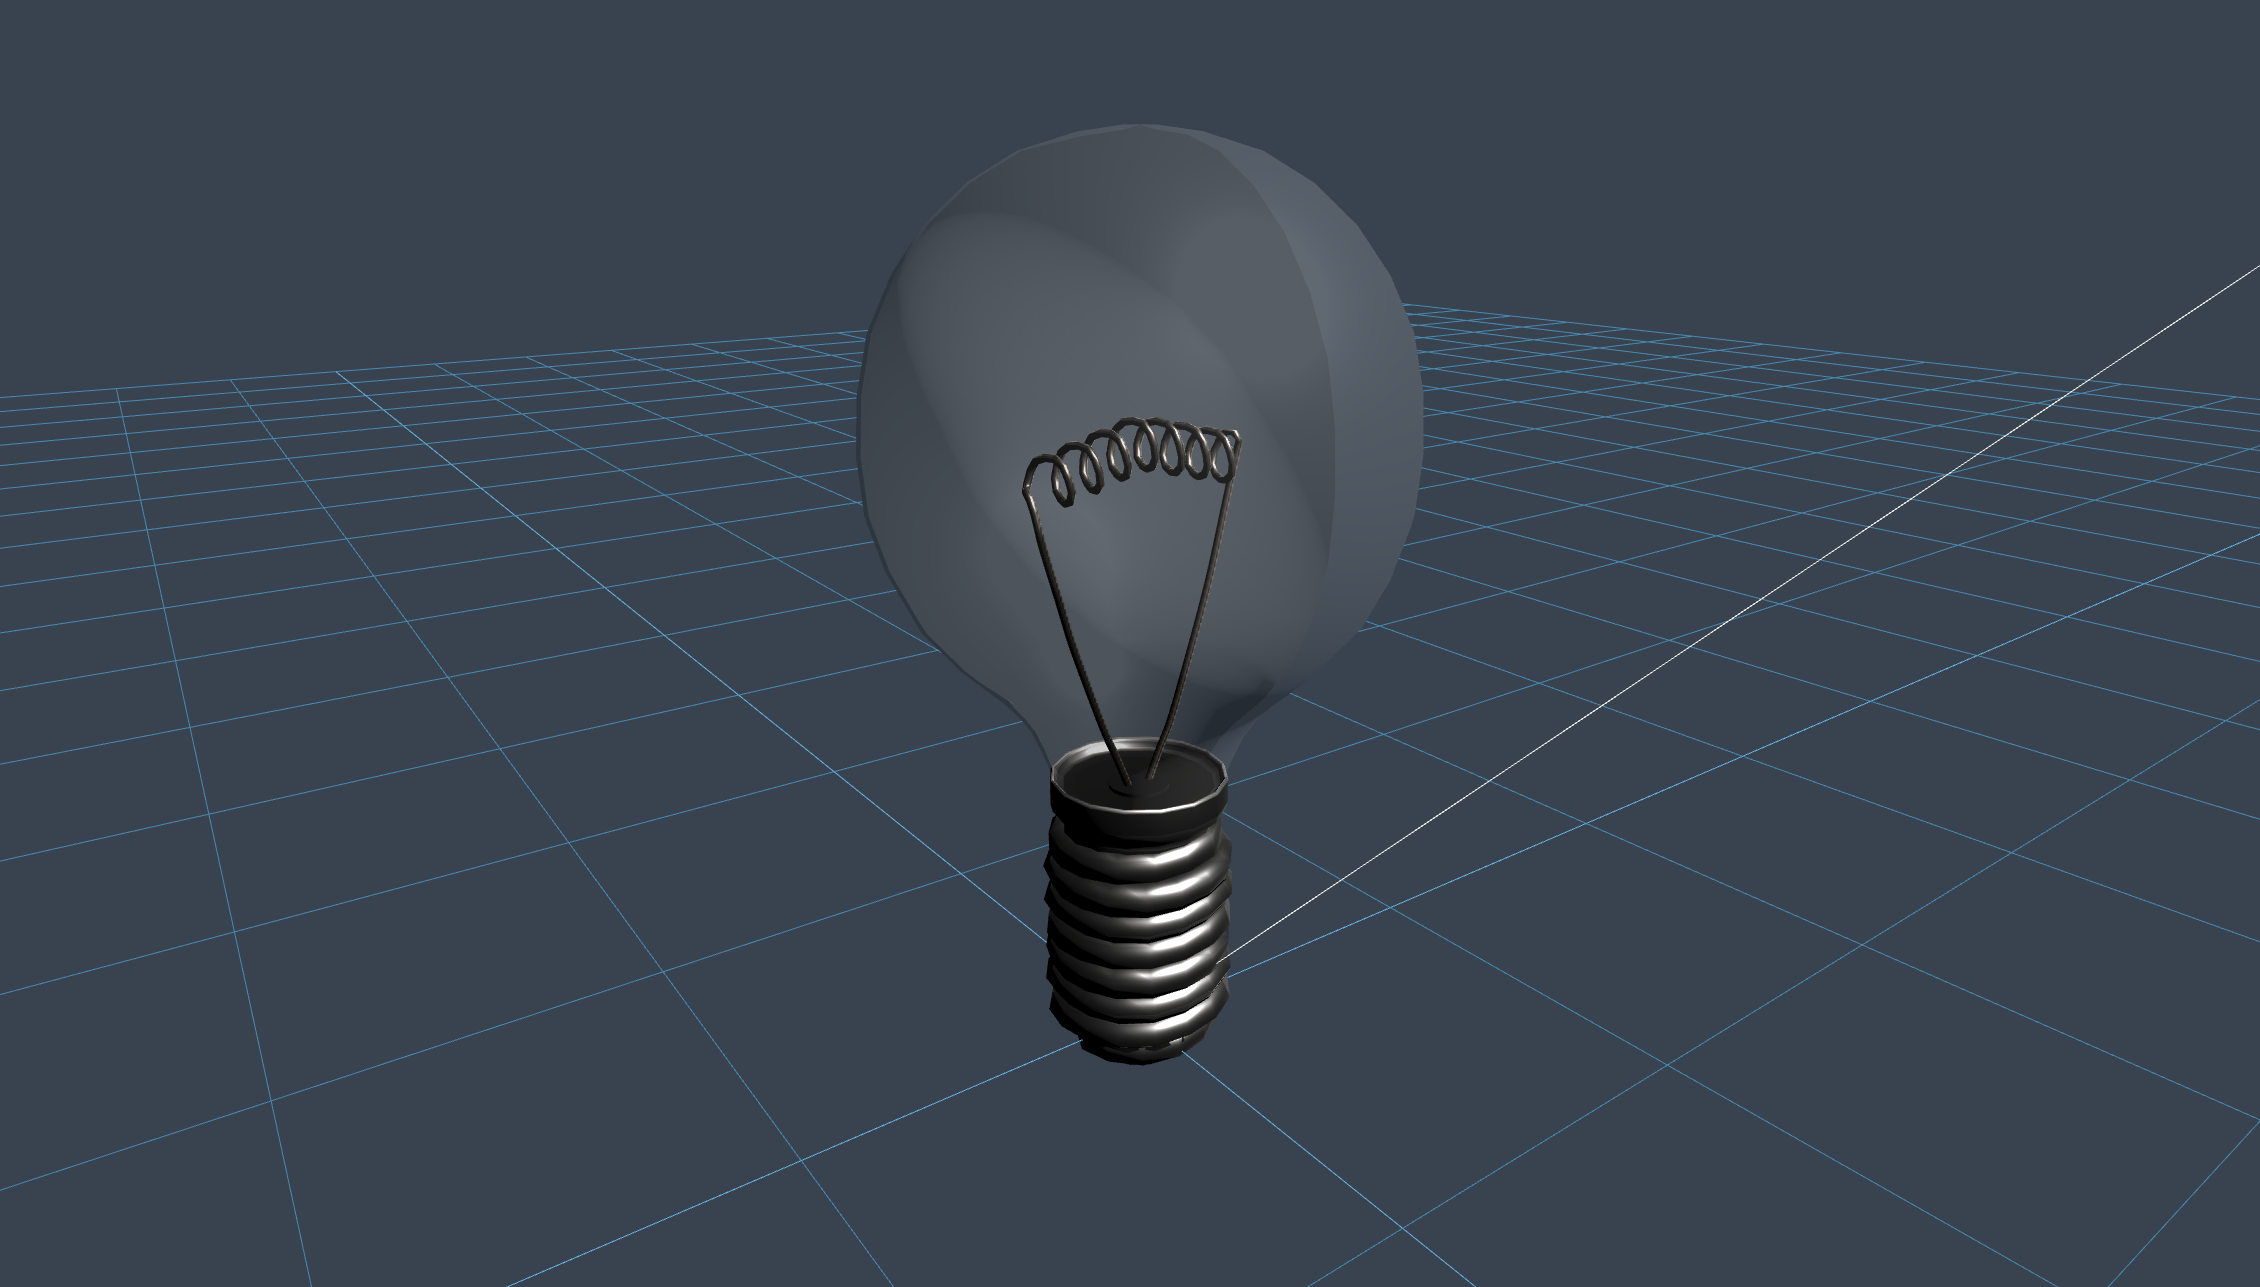 LightBulb - được tạo bởi Niilo Korppi với 3D